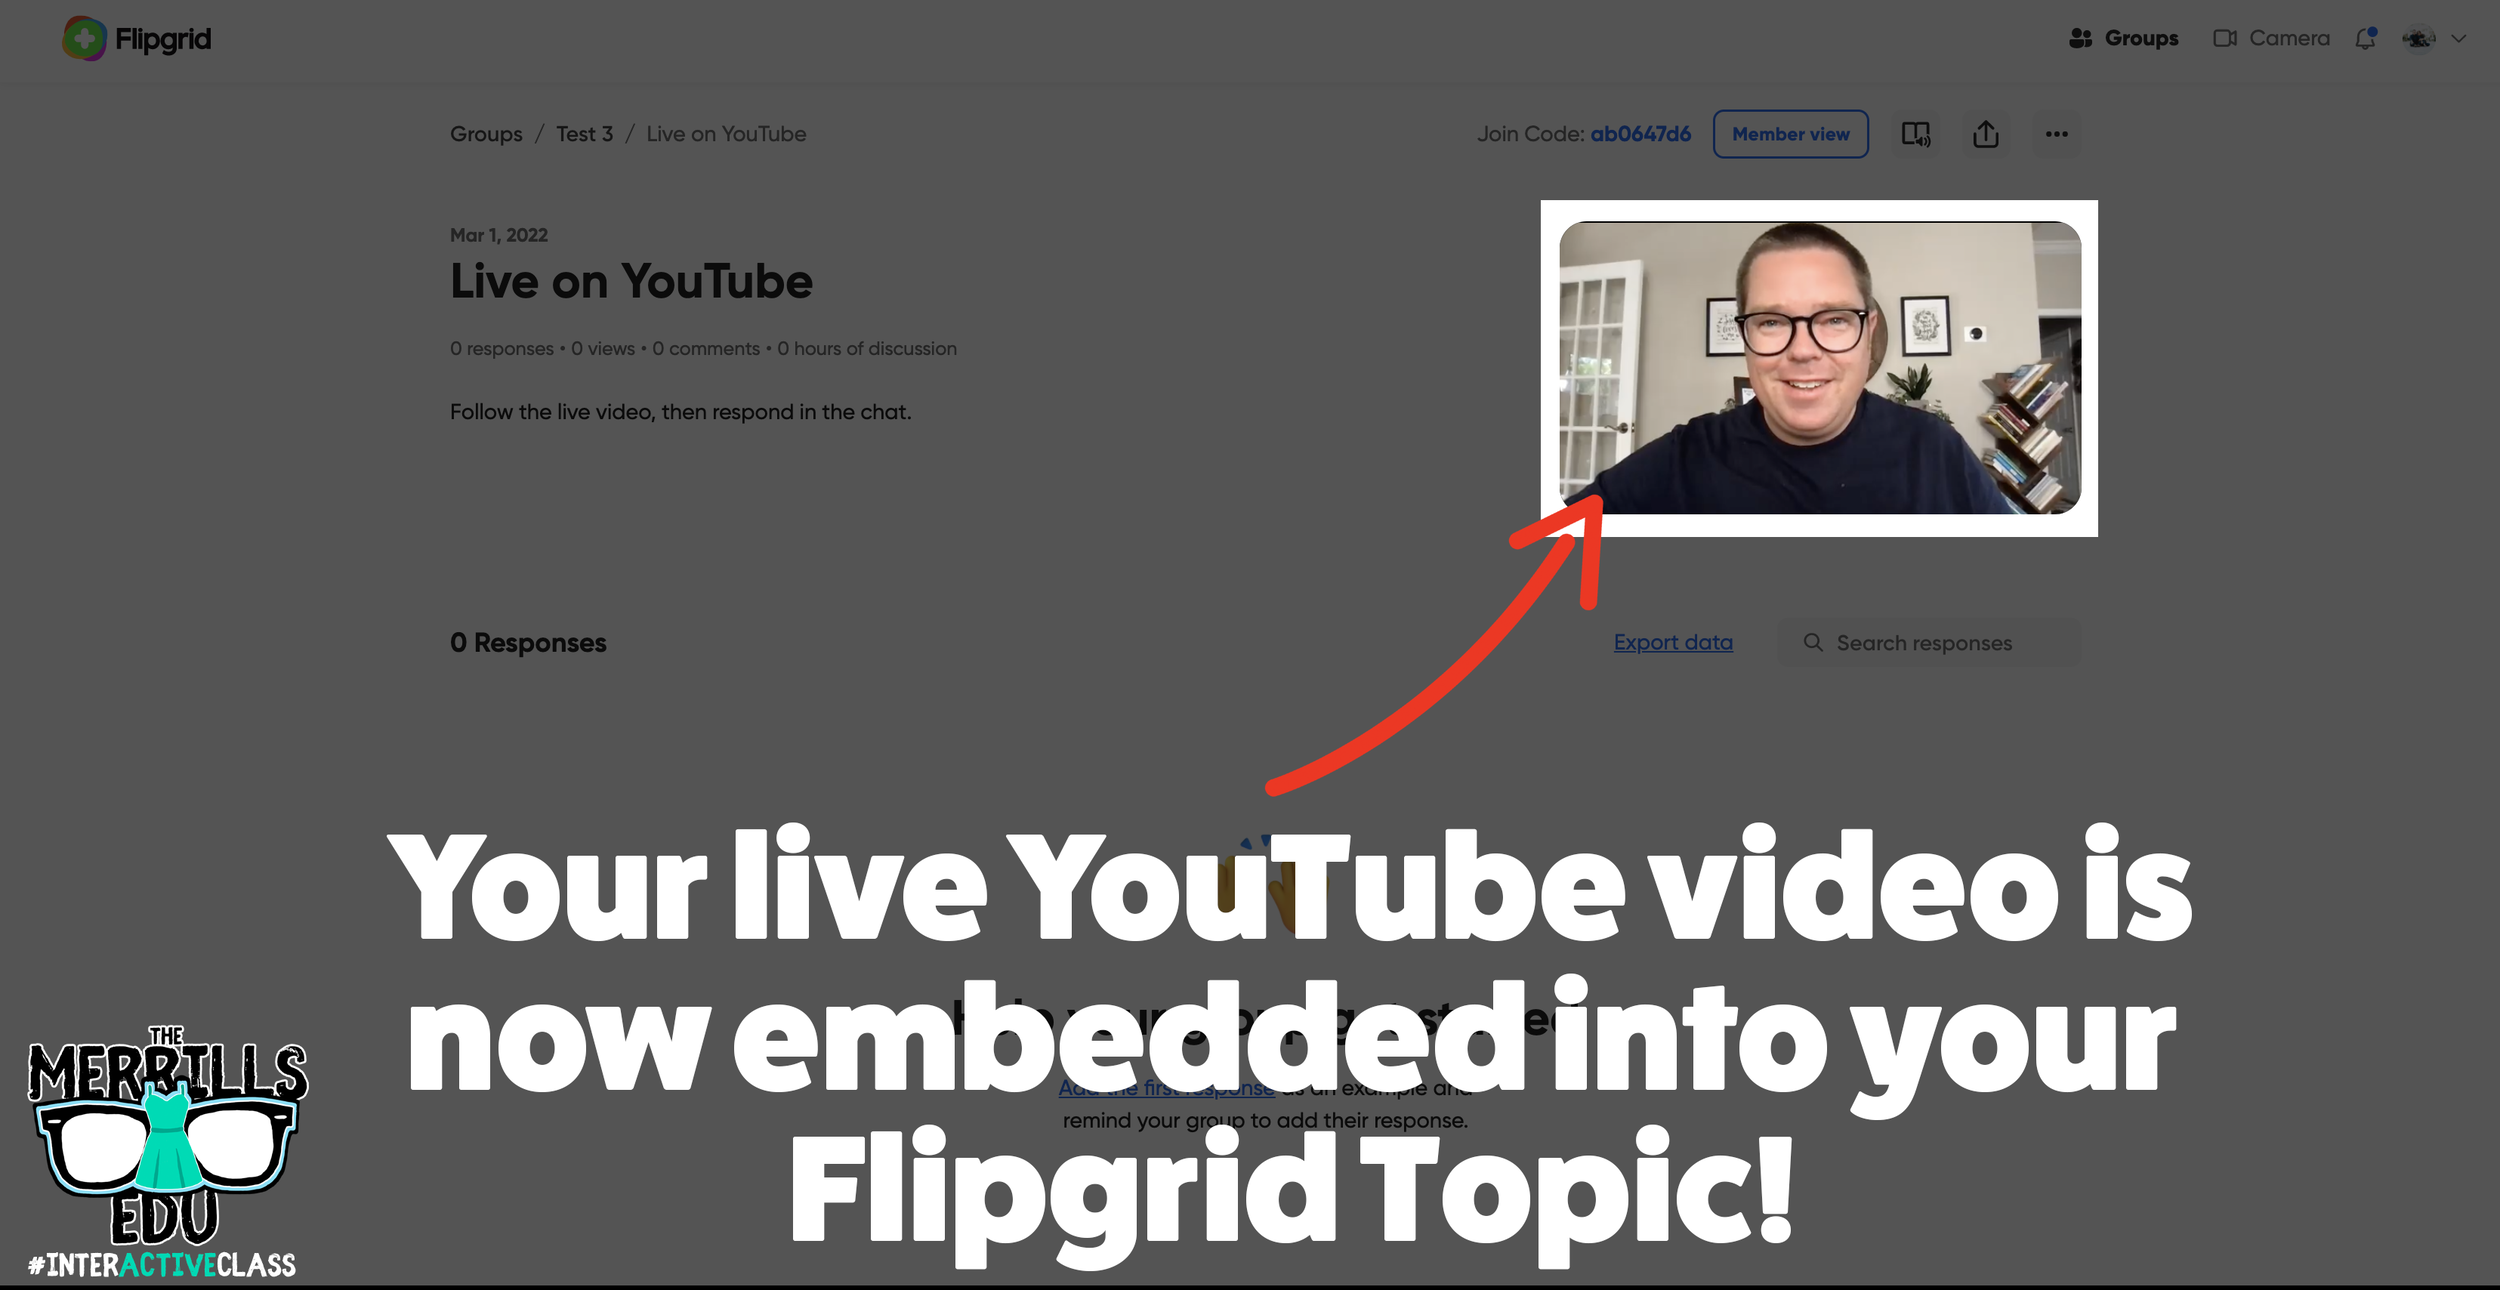 Flipgrid_Hacks_Youtube_Live_4.png